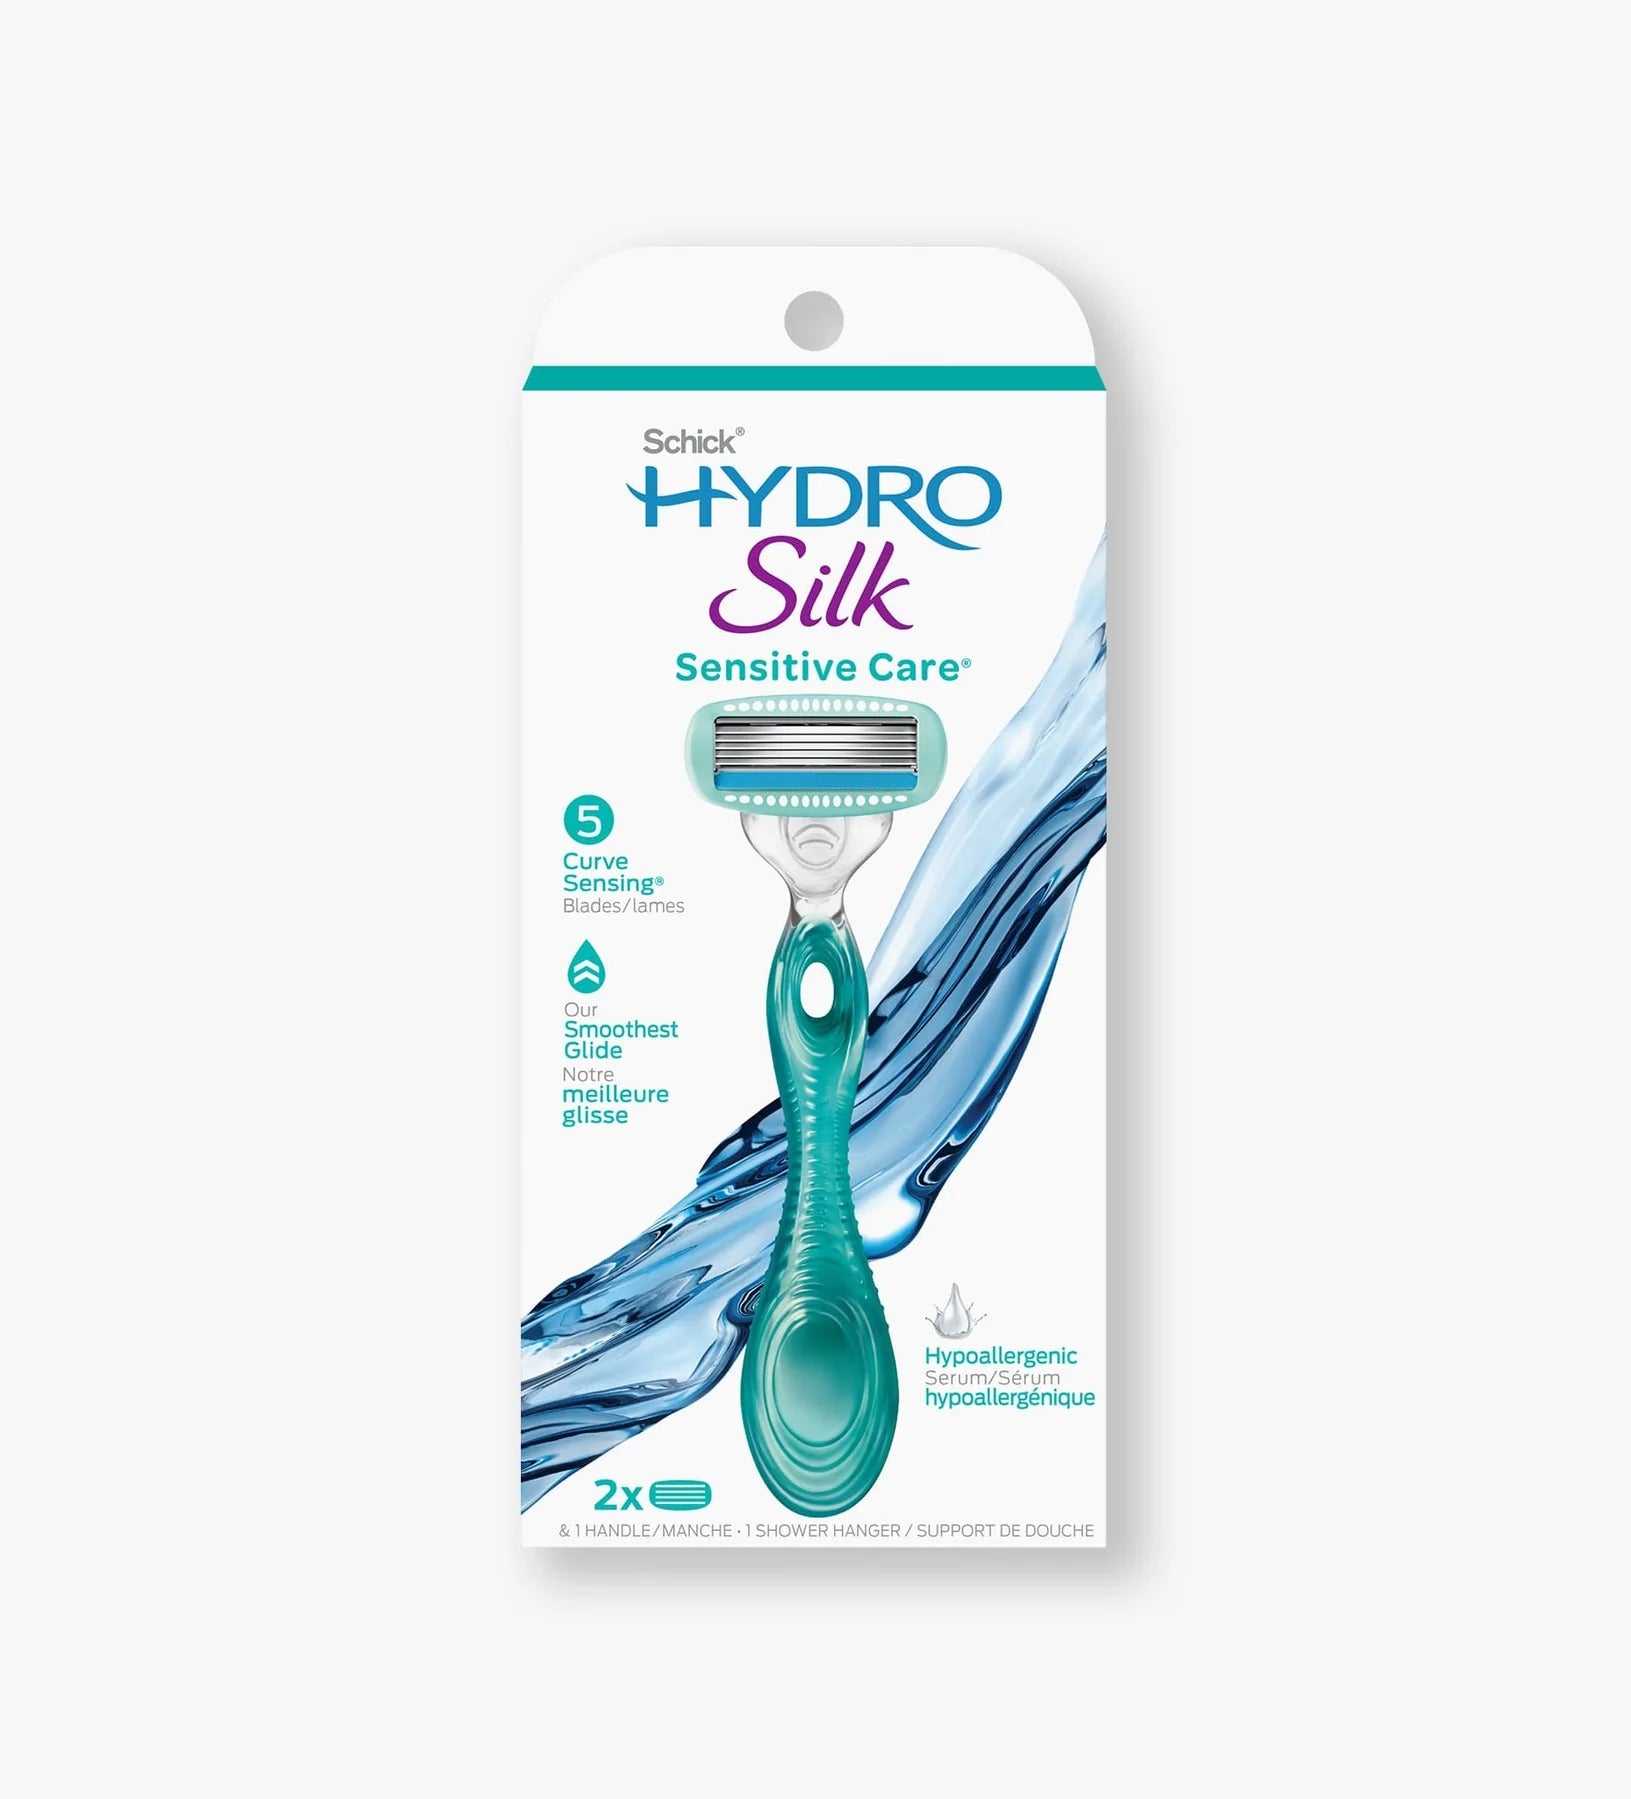 Schick Hydro Silk 5 Sensitive Care Razor